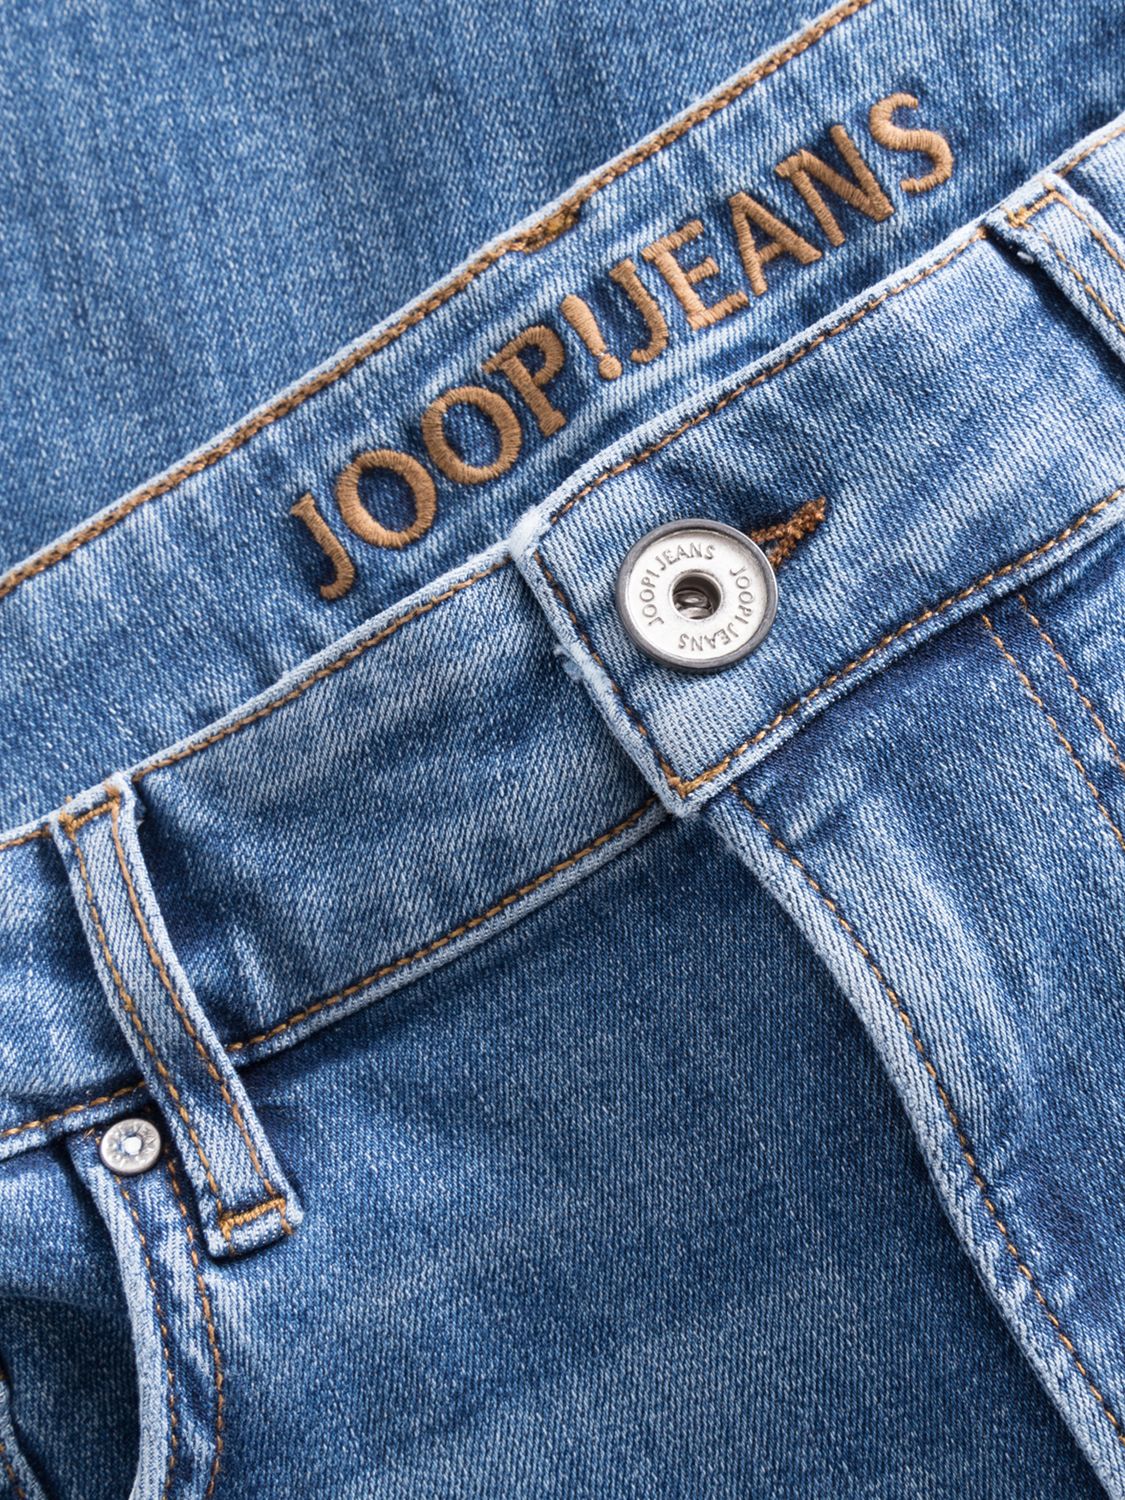 JOOP! Mitch Straight Leg Denim Jeans, Blue Denim, W32/L30